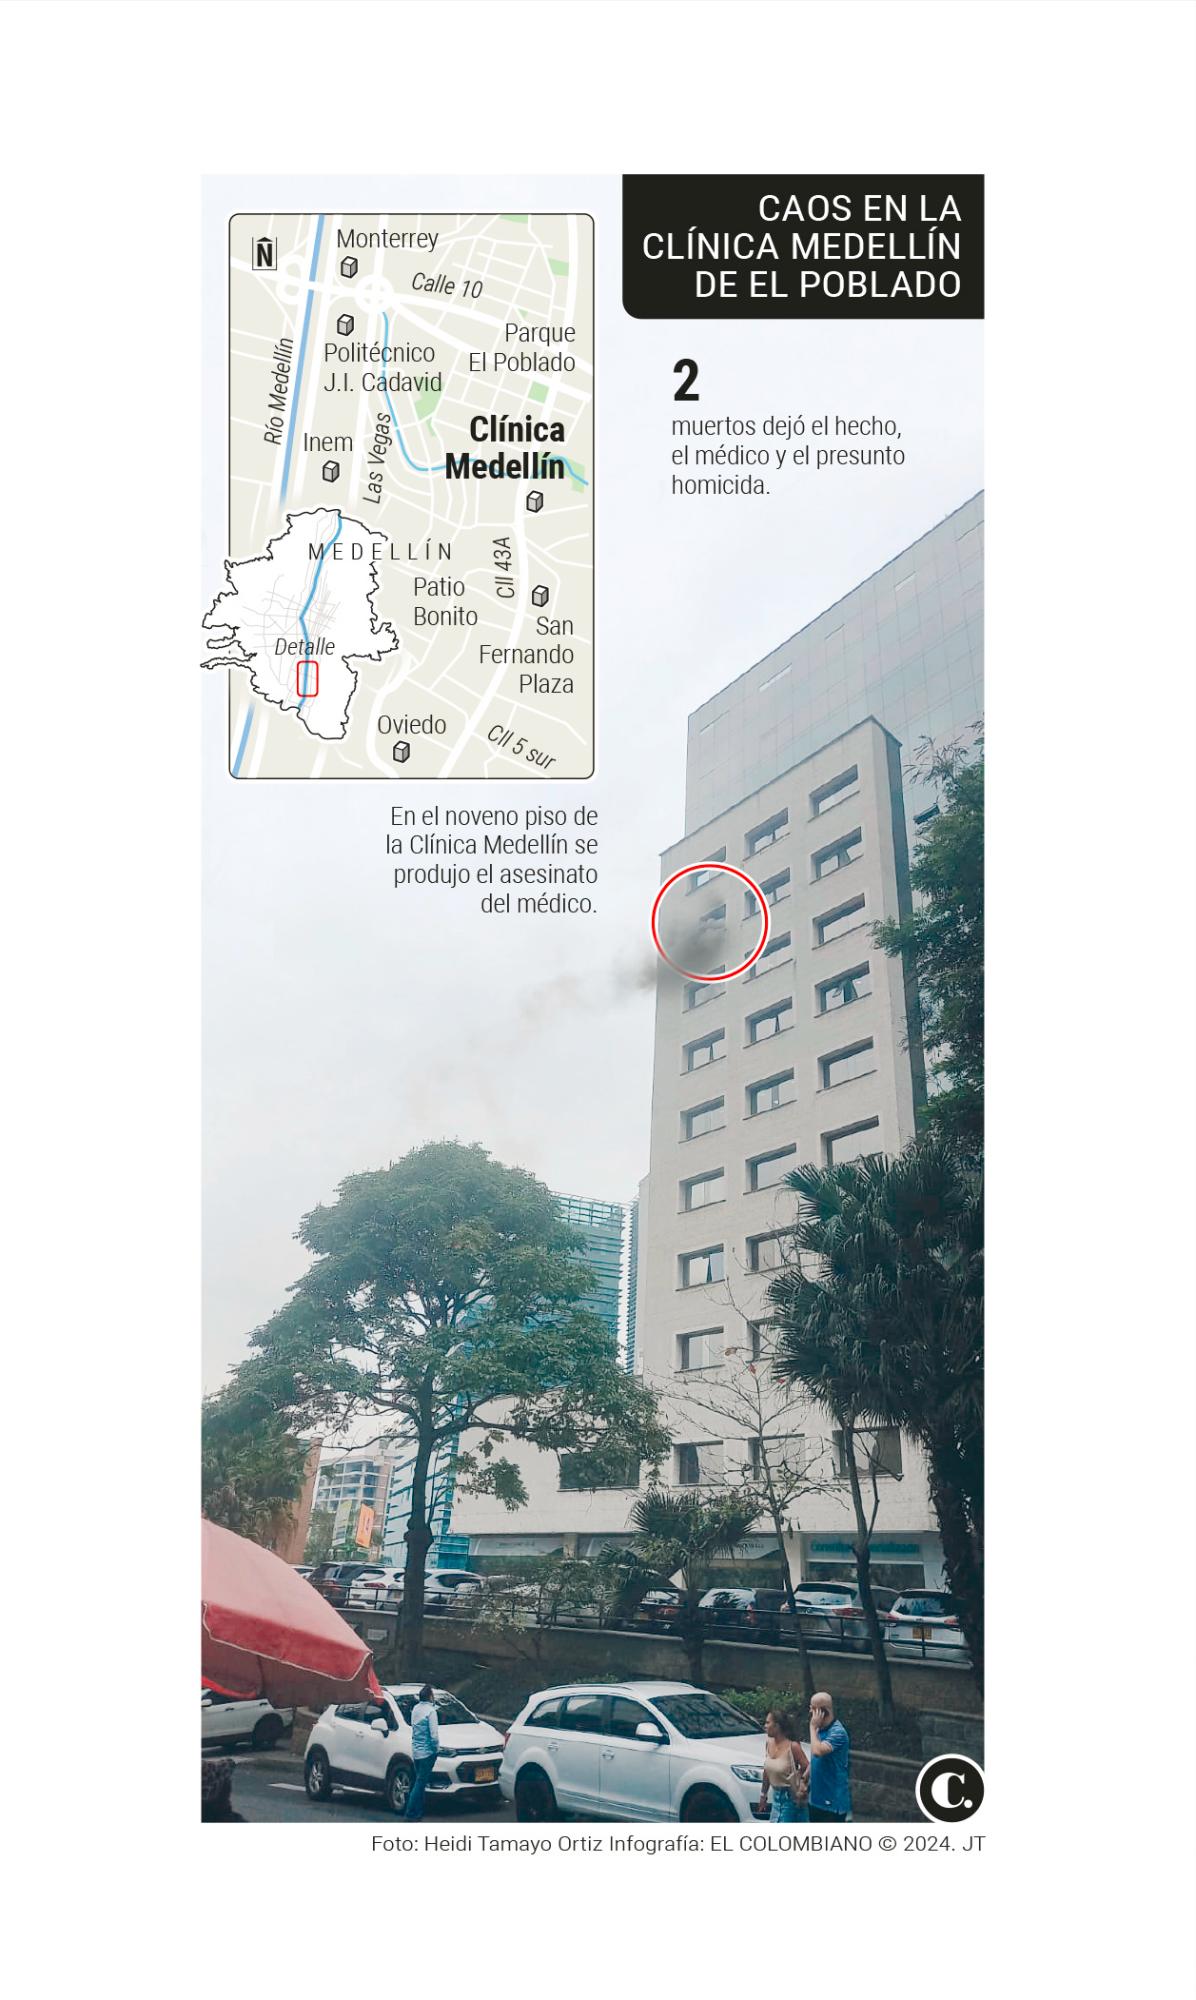 ¡Atención! Hombre asesinó a un médico en la Clínica Medellín de El Poblado e incendió el consultorio